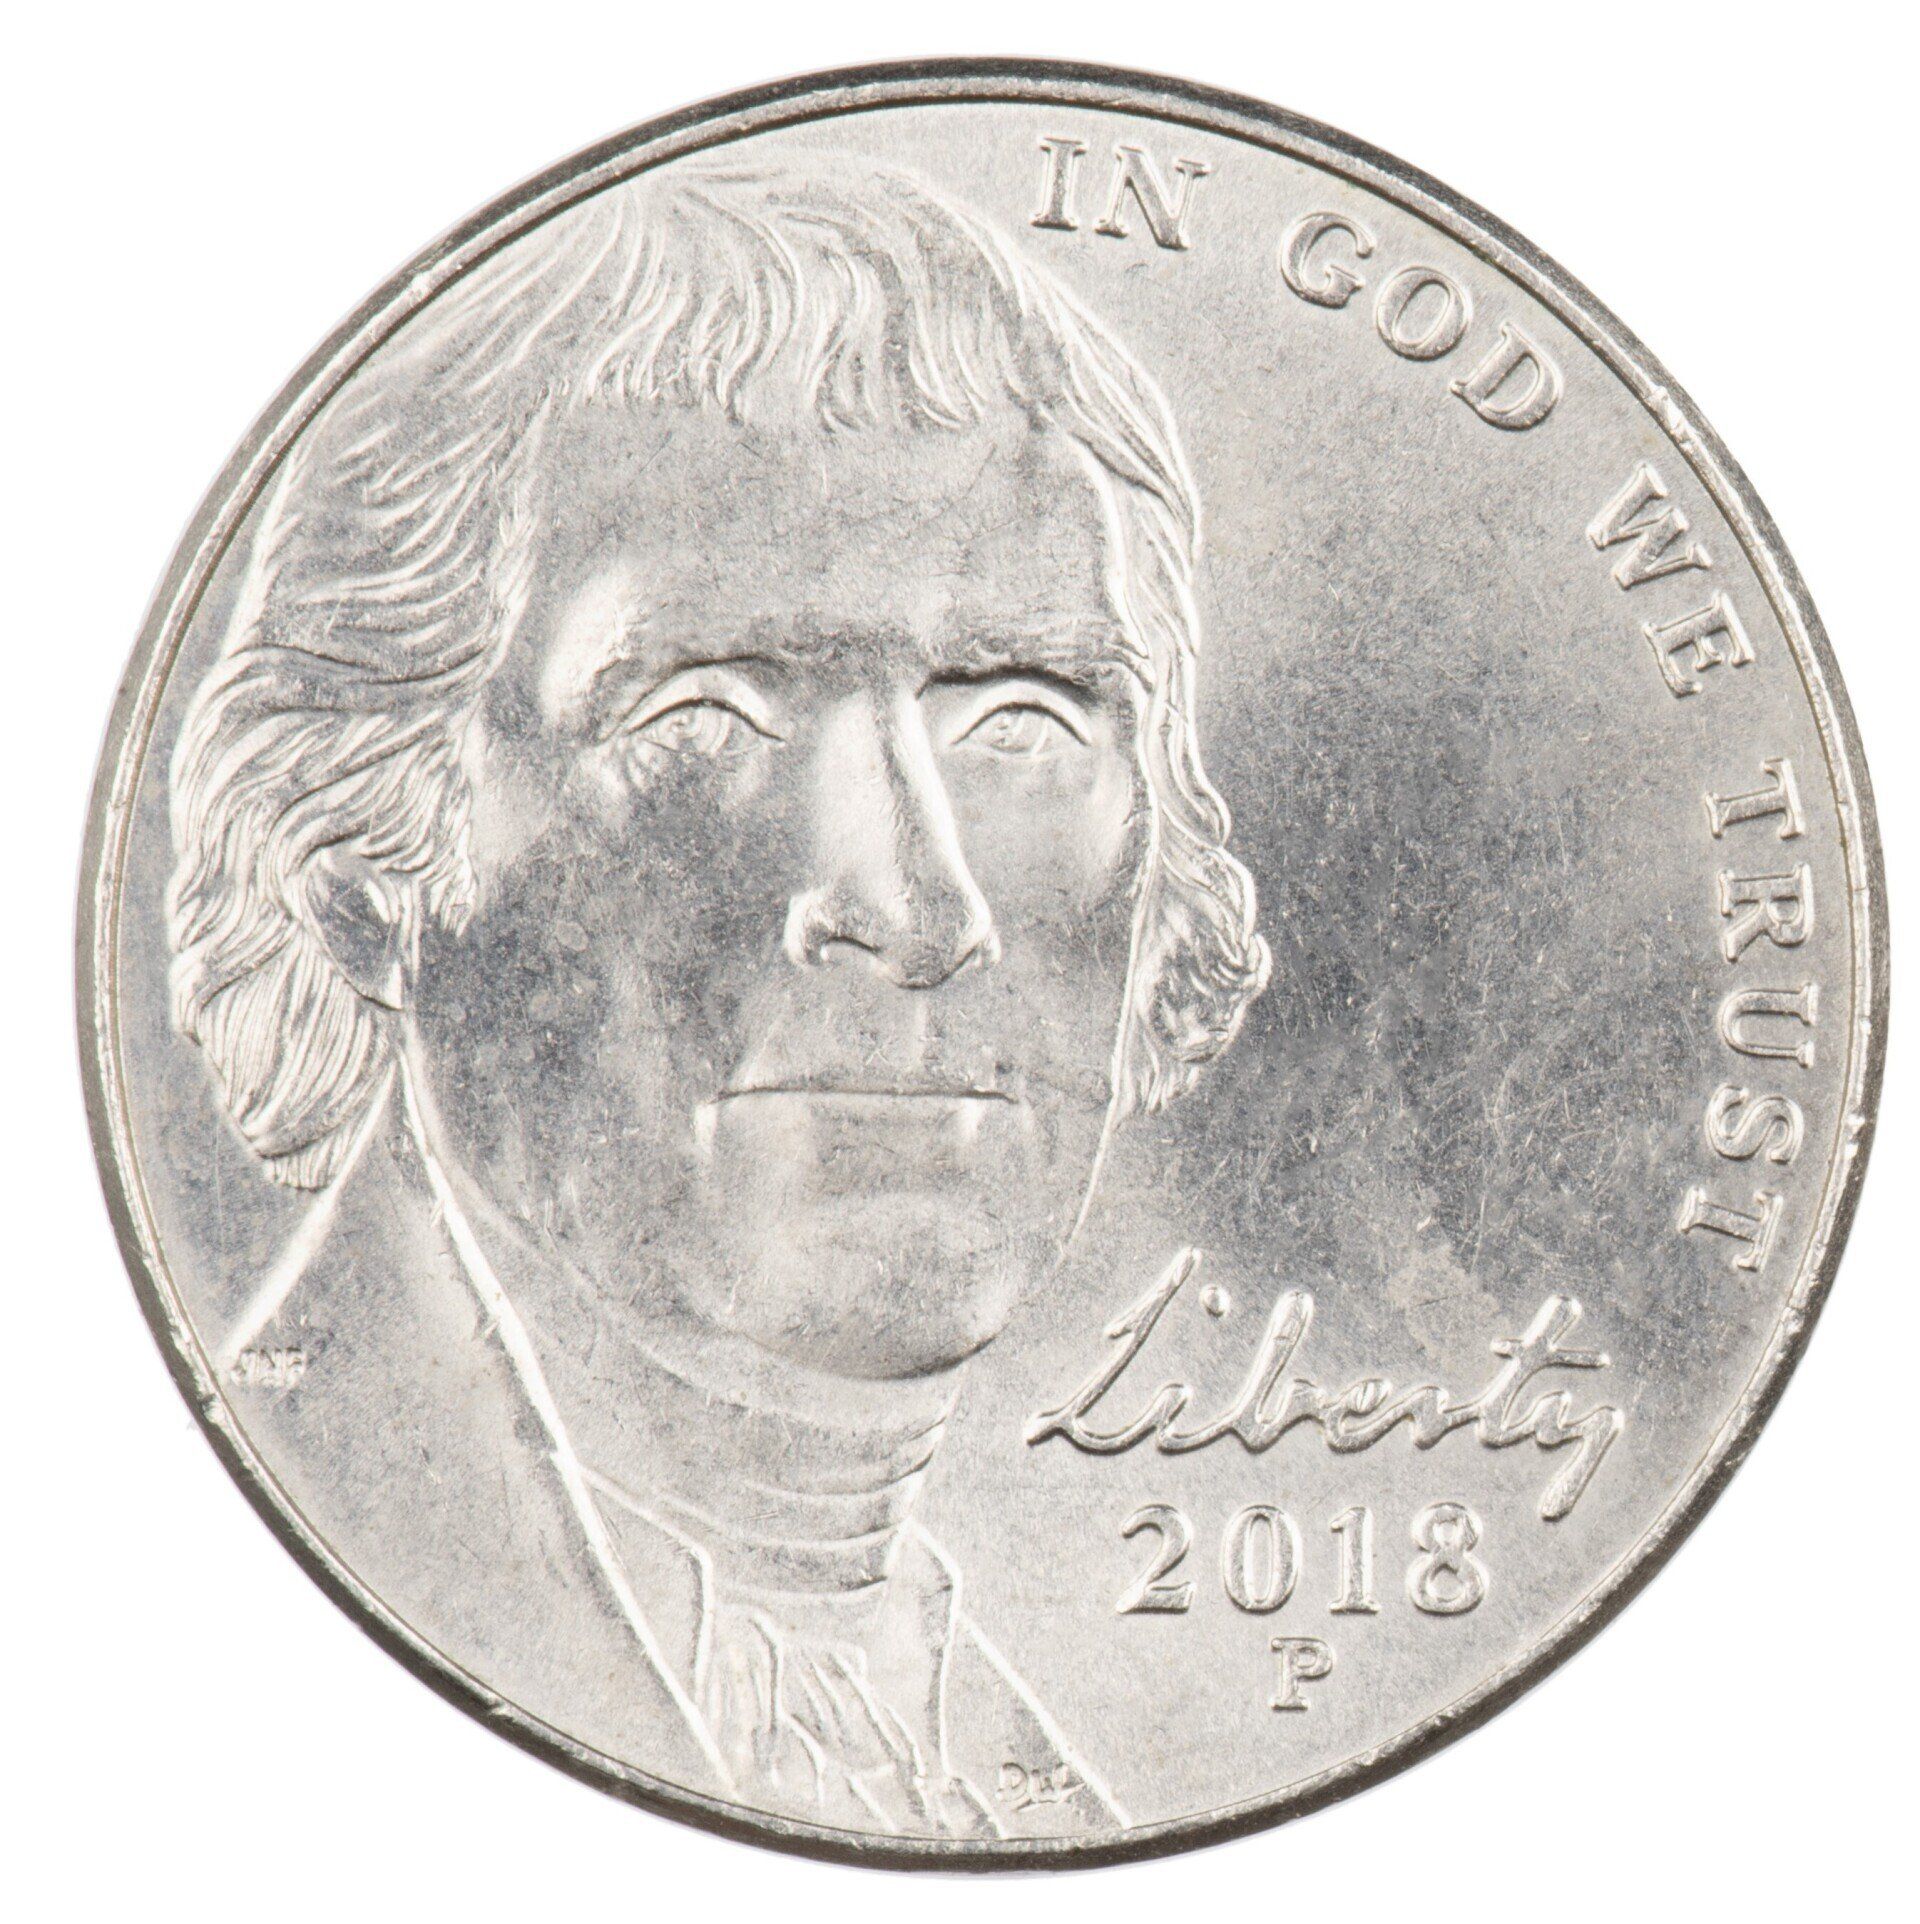 2018 Jefferson Nickel from the Philadelphia Mint